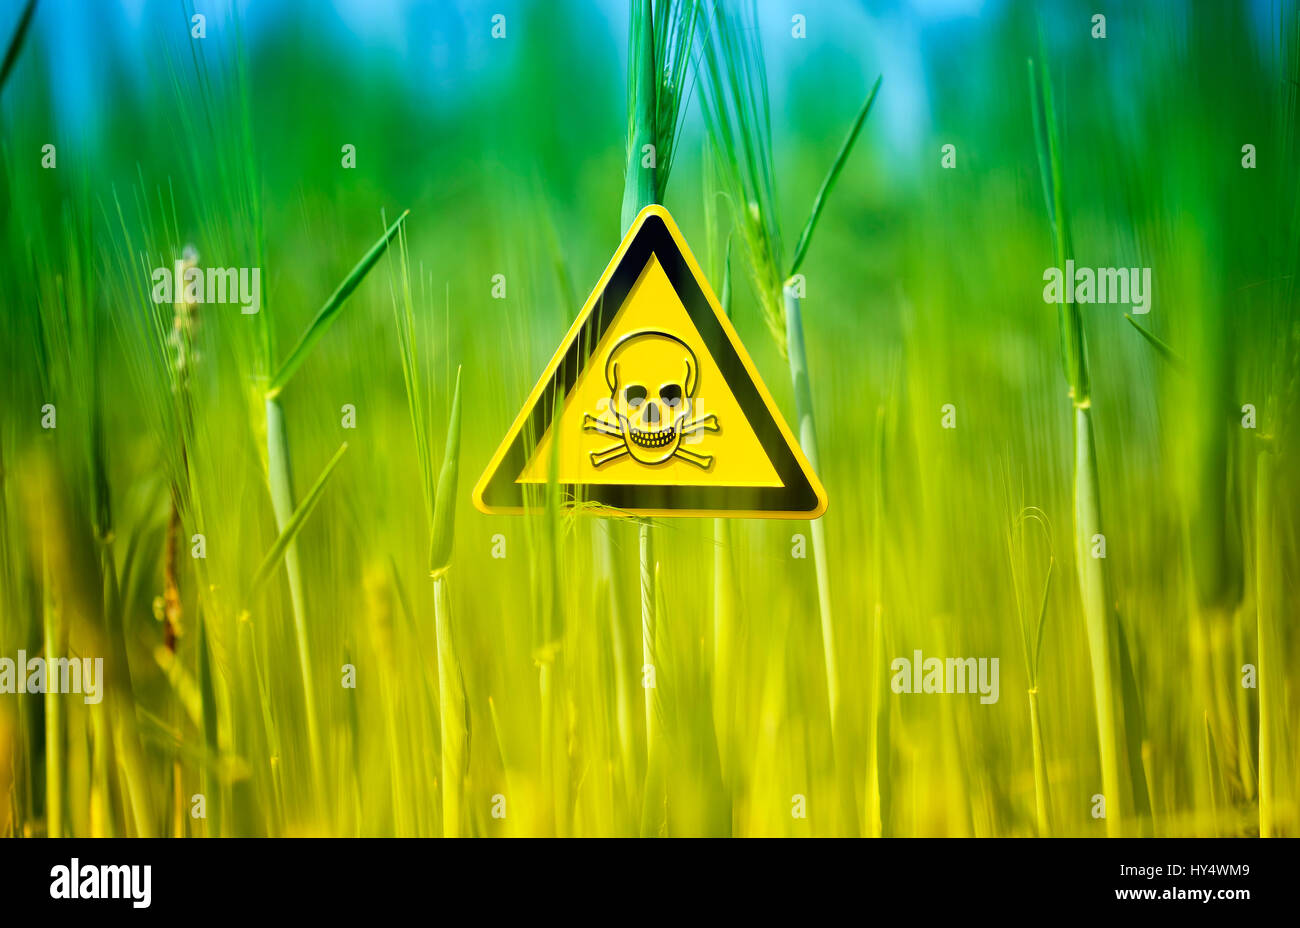 Danger signs in the grain field, application of poison materials in the agriculture, Gefaehrdungszeichen im Kornfeld, Einsatz von Giftstoffen in der L Stock Photo